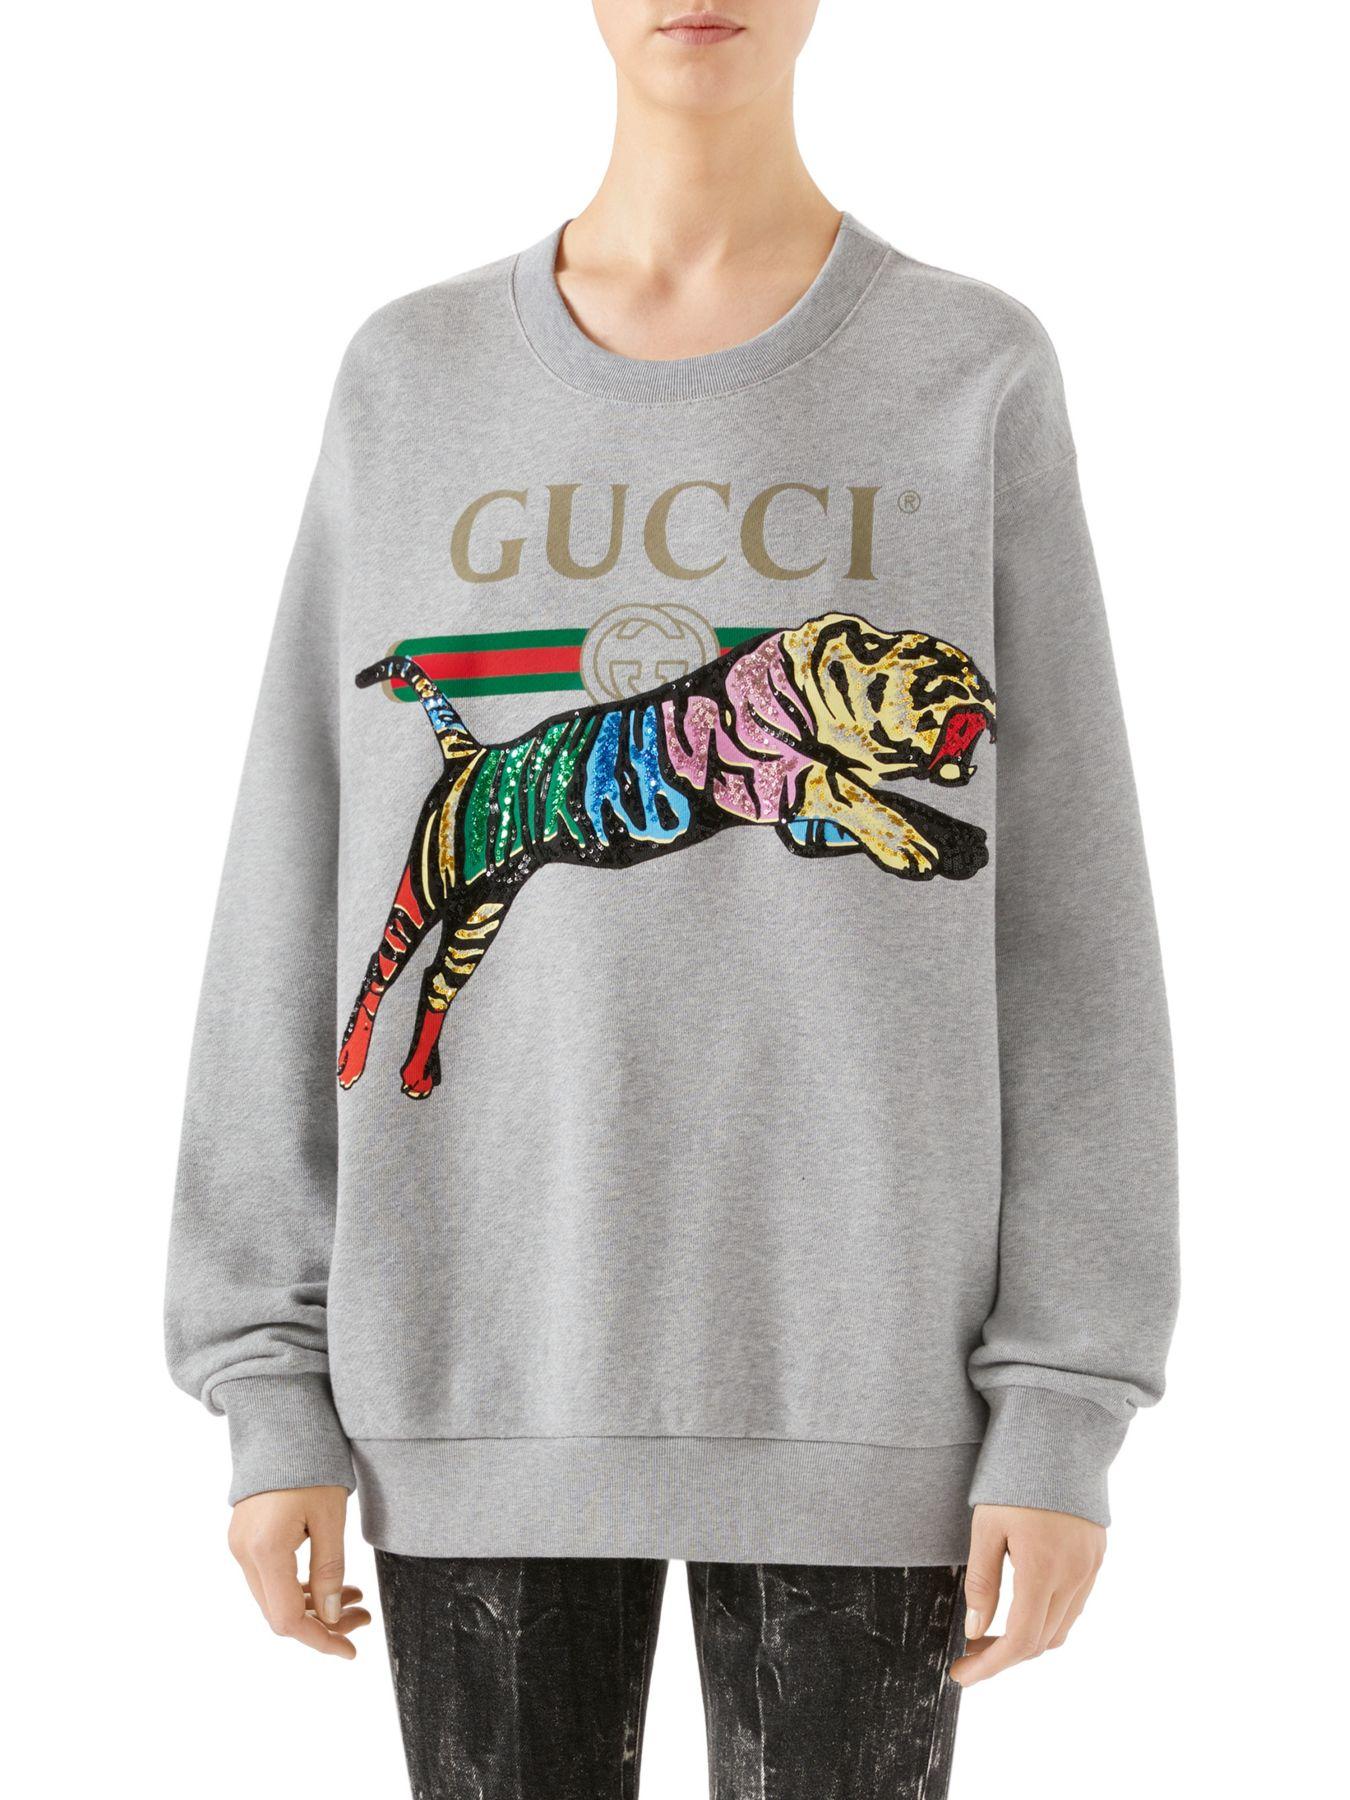 Gucci Sequin Tiger Sweatshirt in Grey (Gray) | Lyst